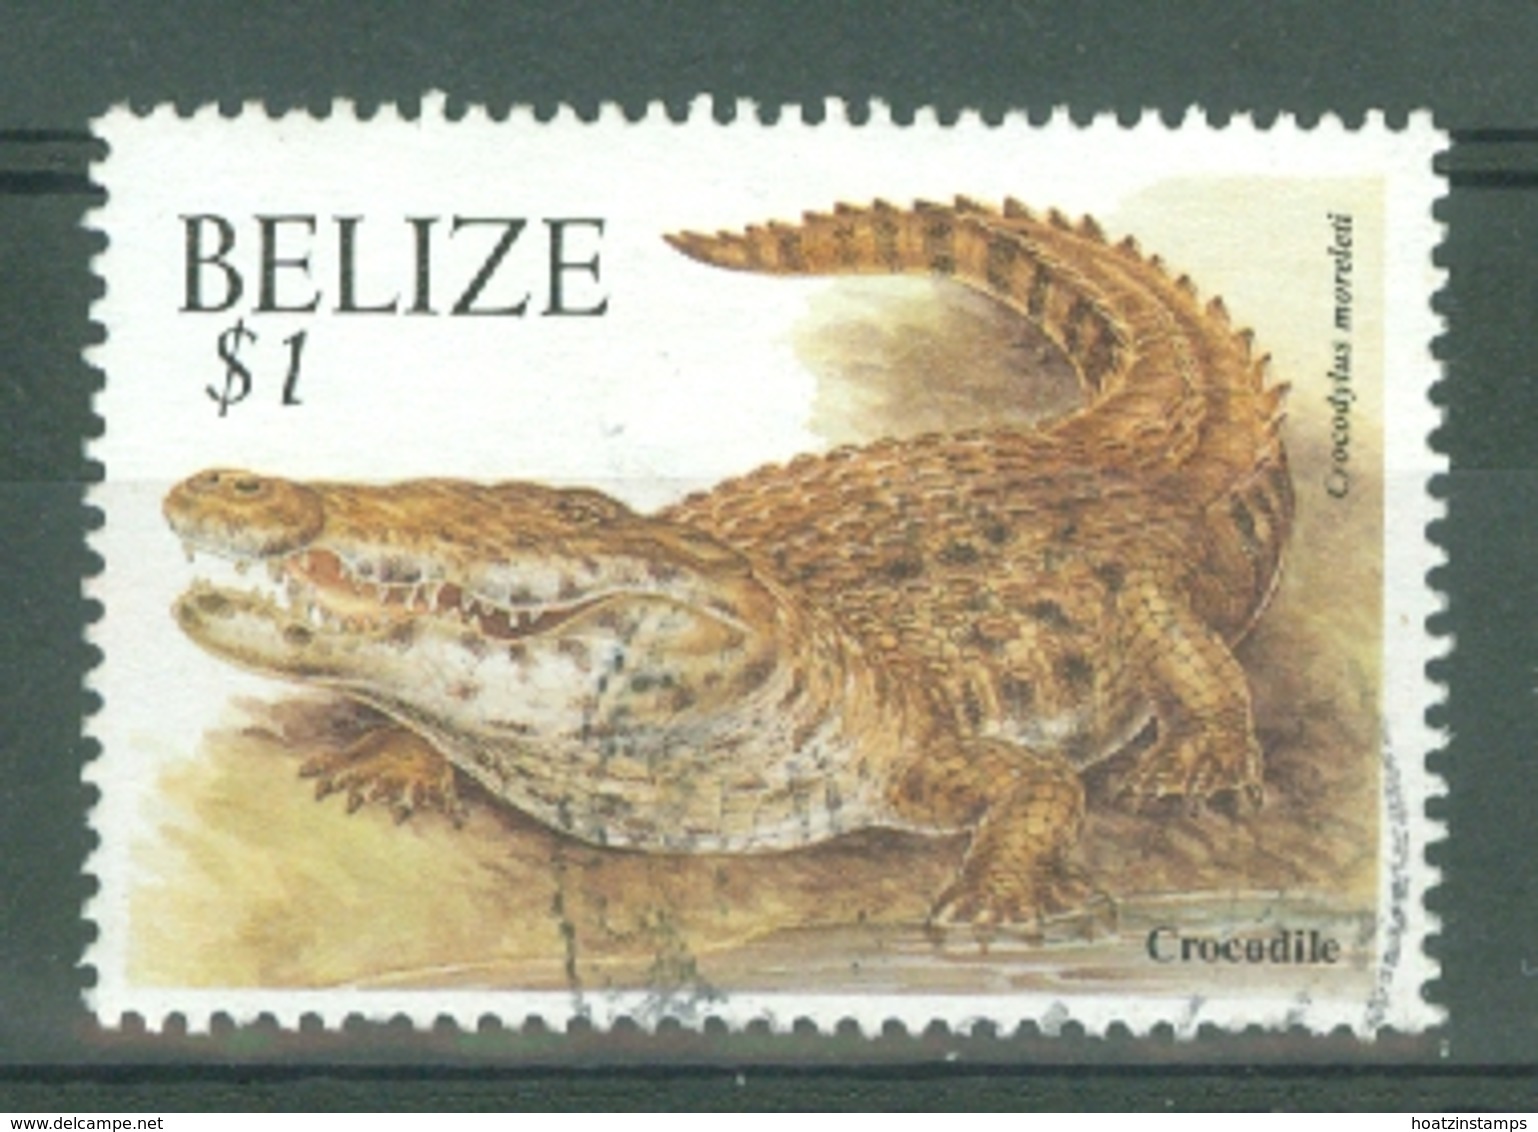 Belize: 2000/2003   Wildlife   SG1262A    $1  Used - Belize (1973-...)